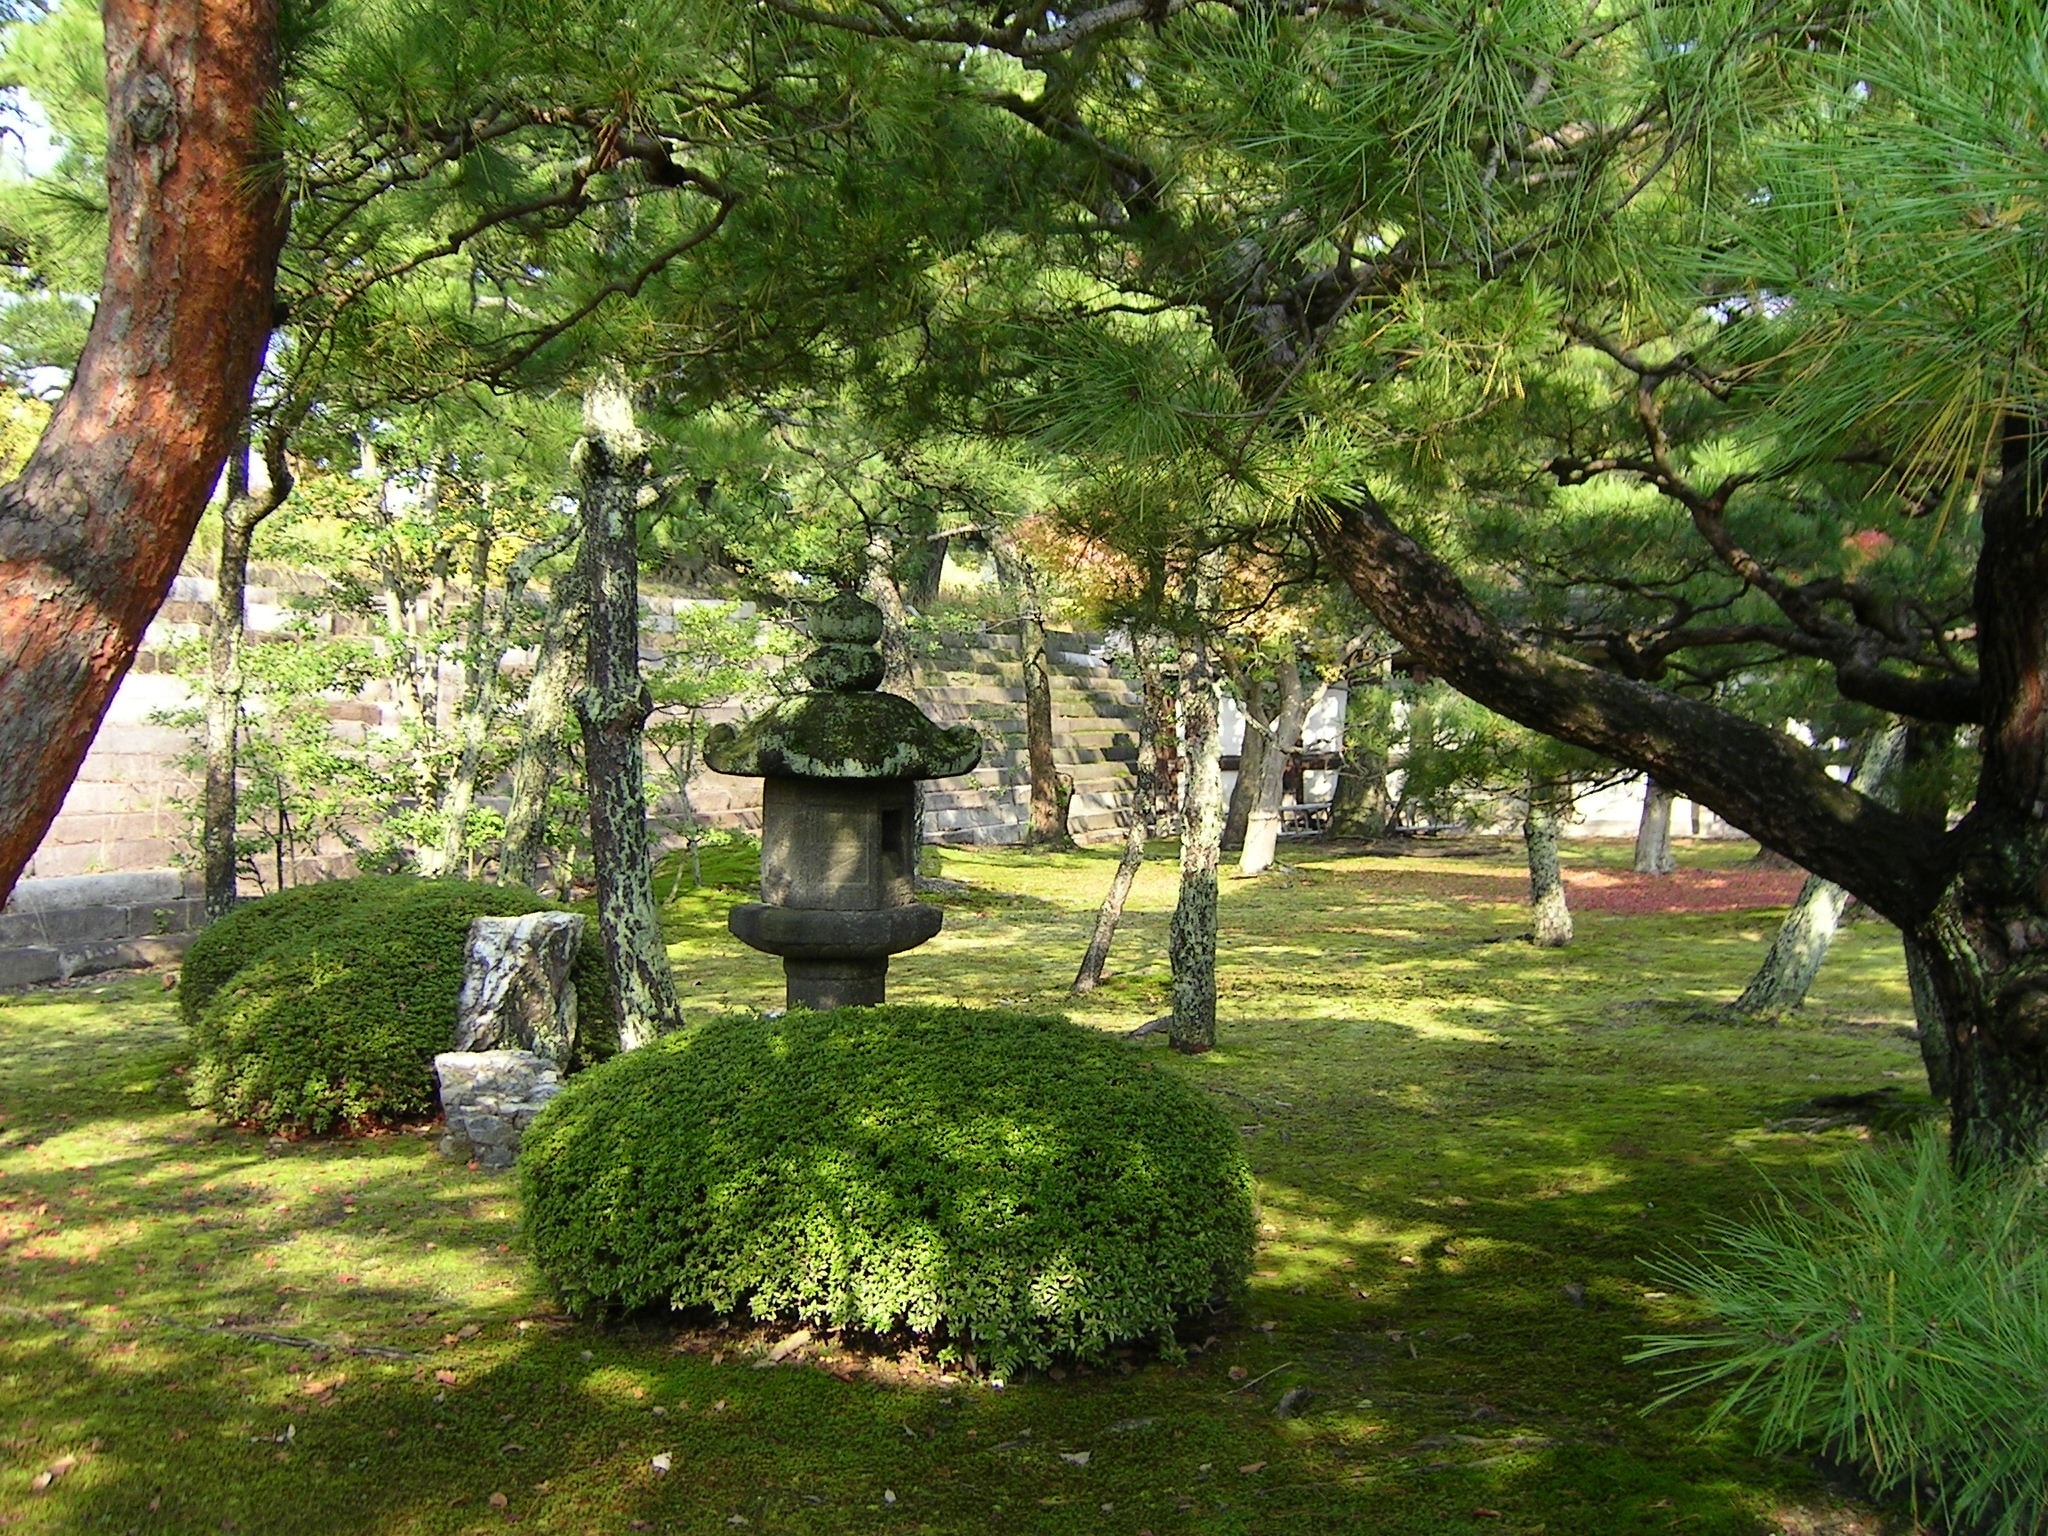 Garden, Japan, Autumn, tree, green color